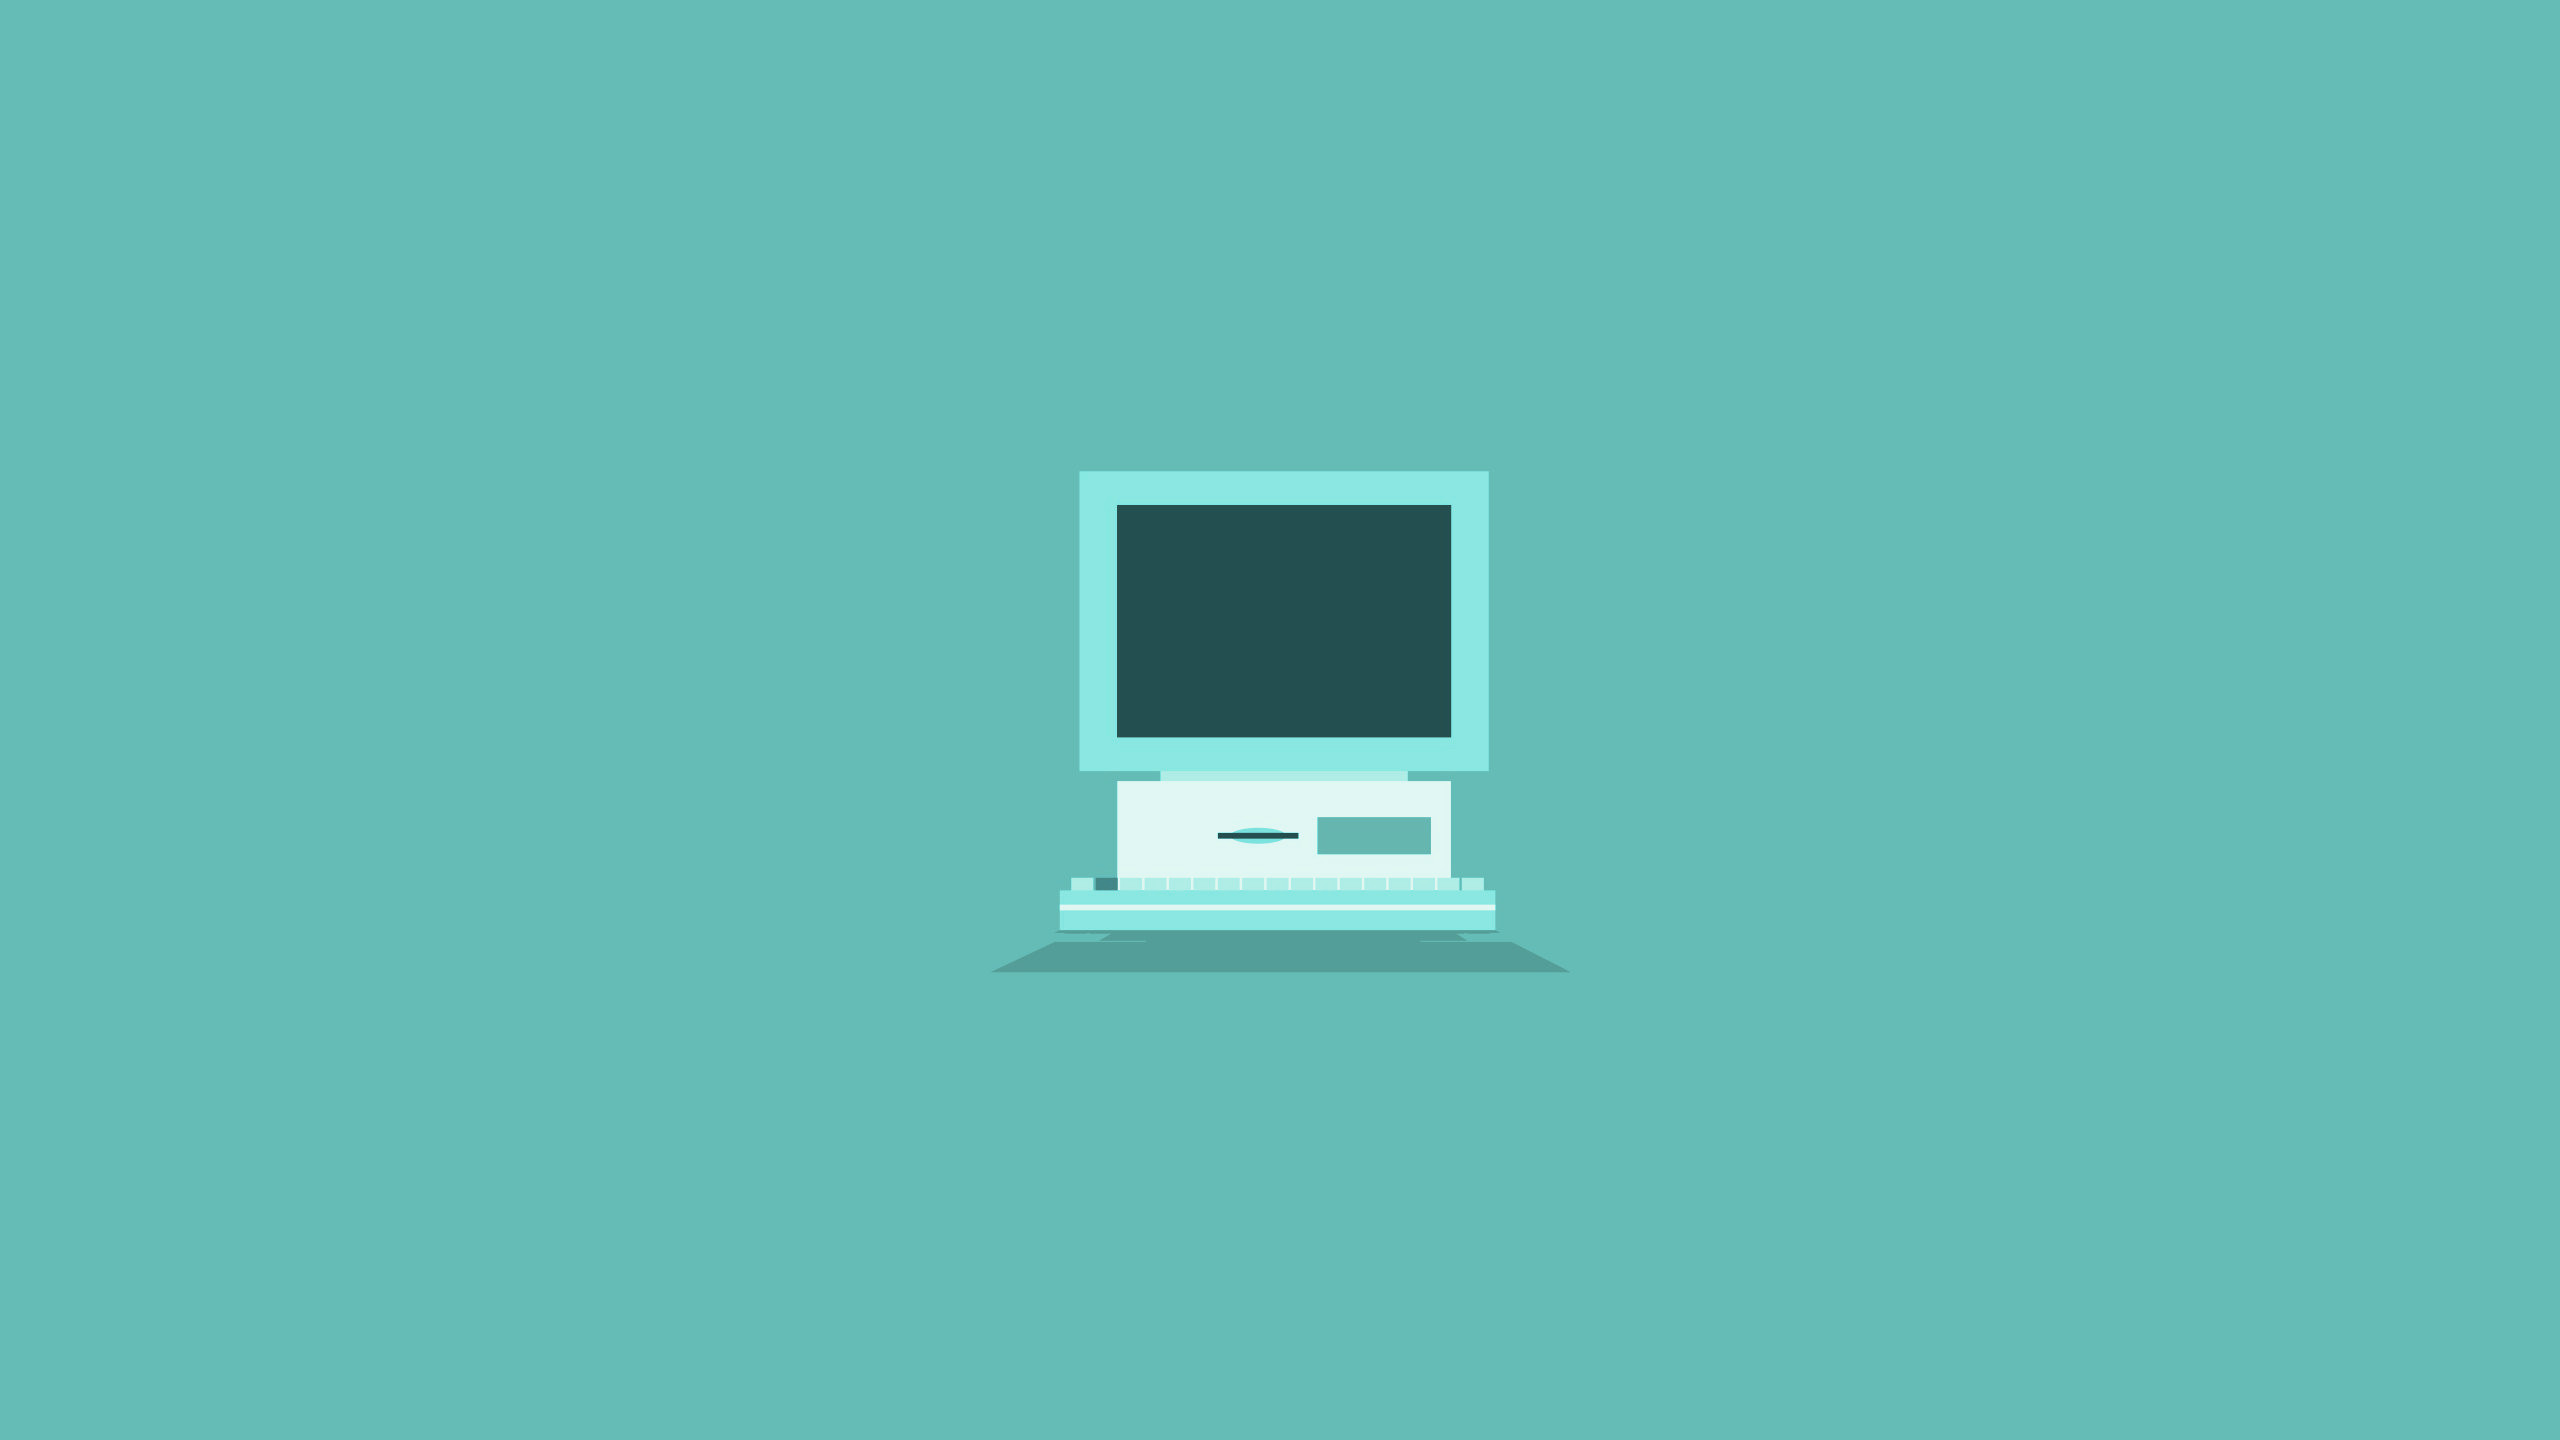 flache desktop hintergrund,grün,technologie,anzeigegerät,illustration